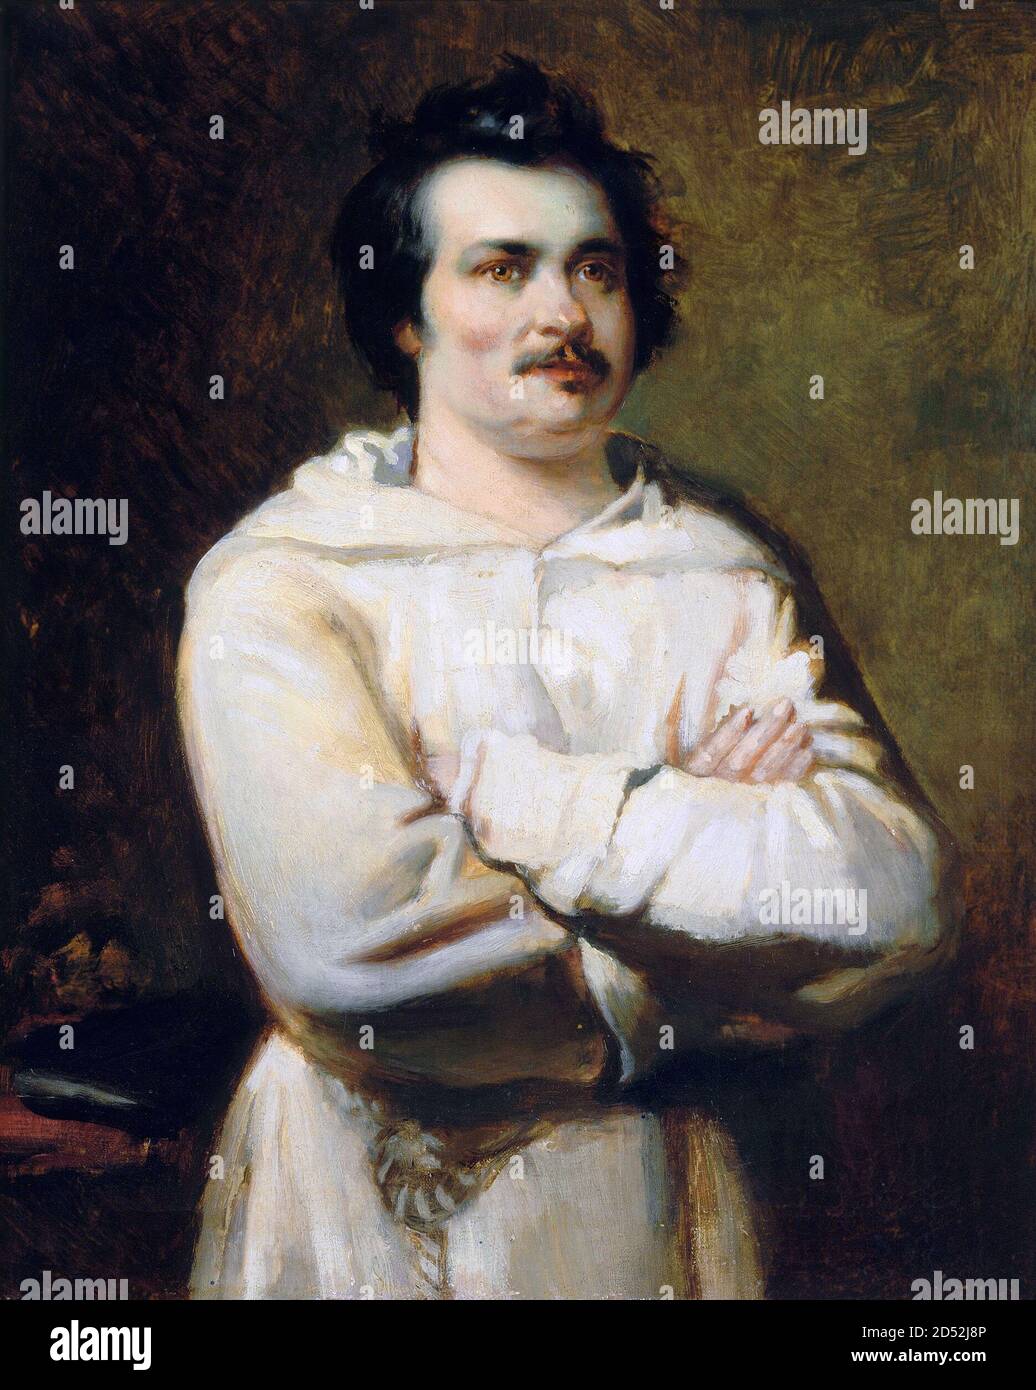 Honoré de Balzac. Porträt des französischen Schriftstellers und Dramatikers, Honoré de Balzac (1799-1850) von Maxime Dastugue, nach einem Gemälde von Louis Boulanger, Öl auf Leinwand, 1886 Stockfoto